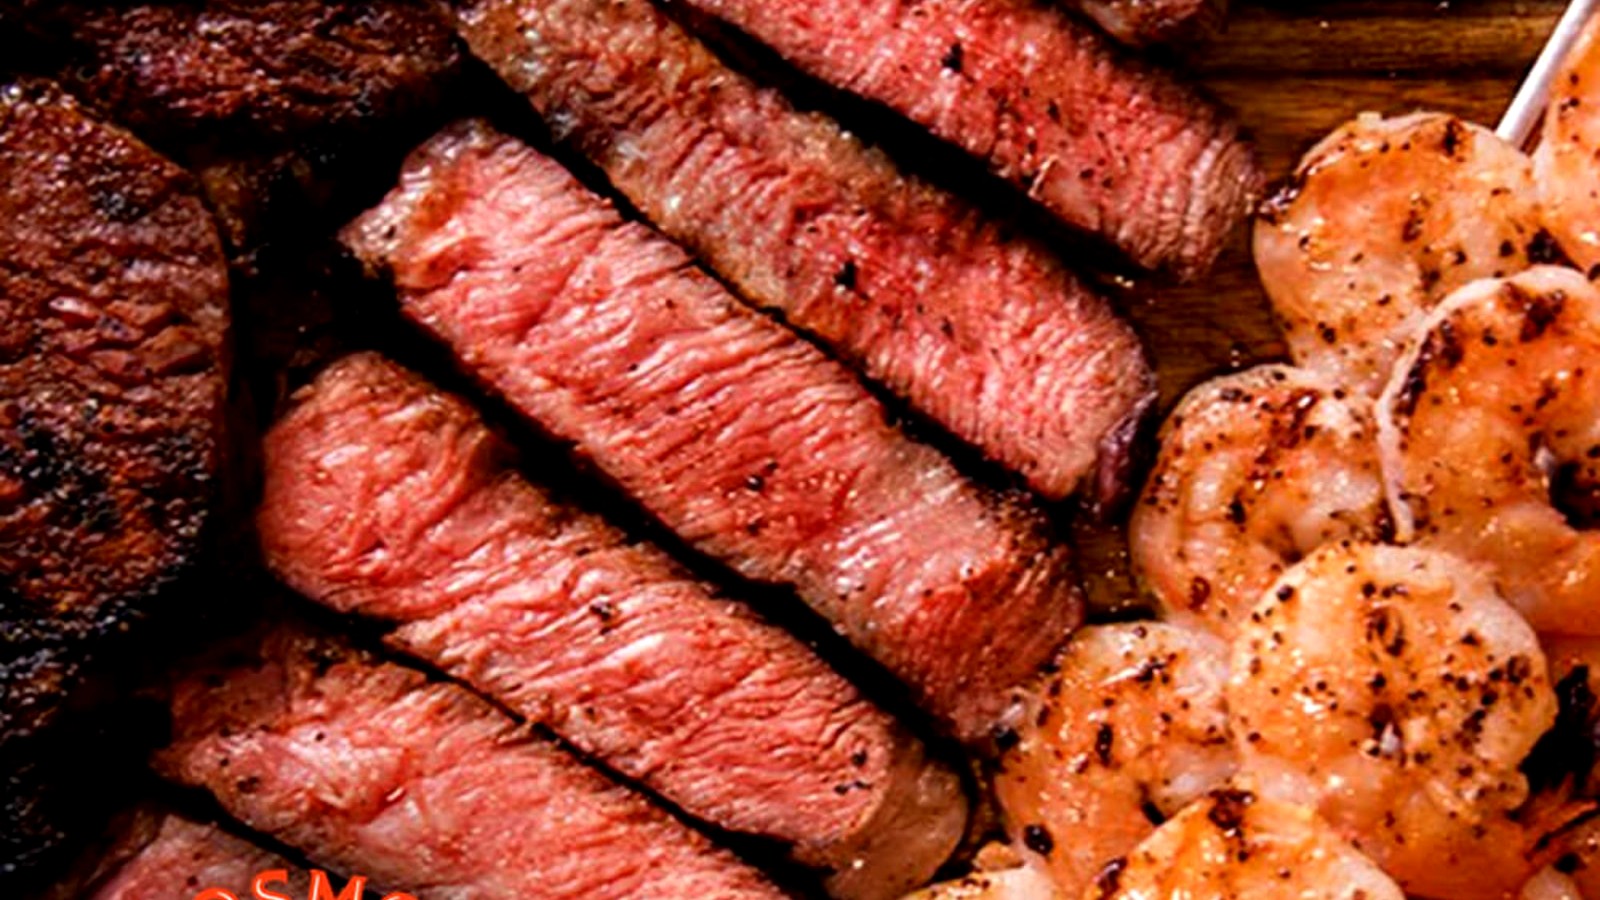 Image of Steak and Shrimp - Oklahoma Surf & Turf!